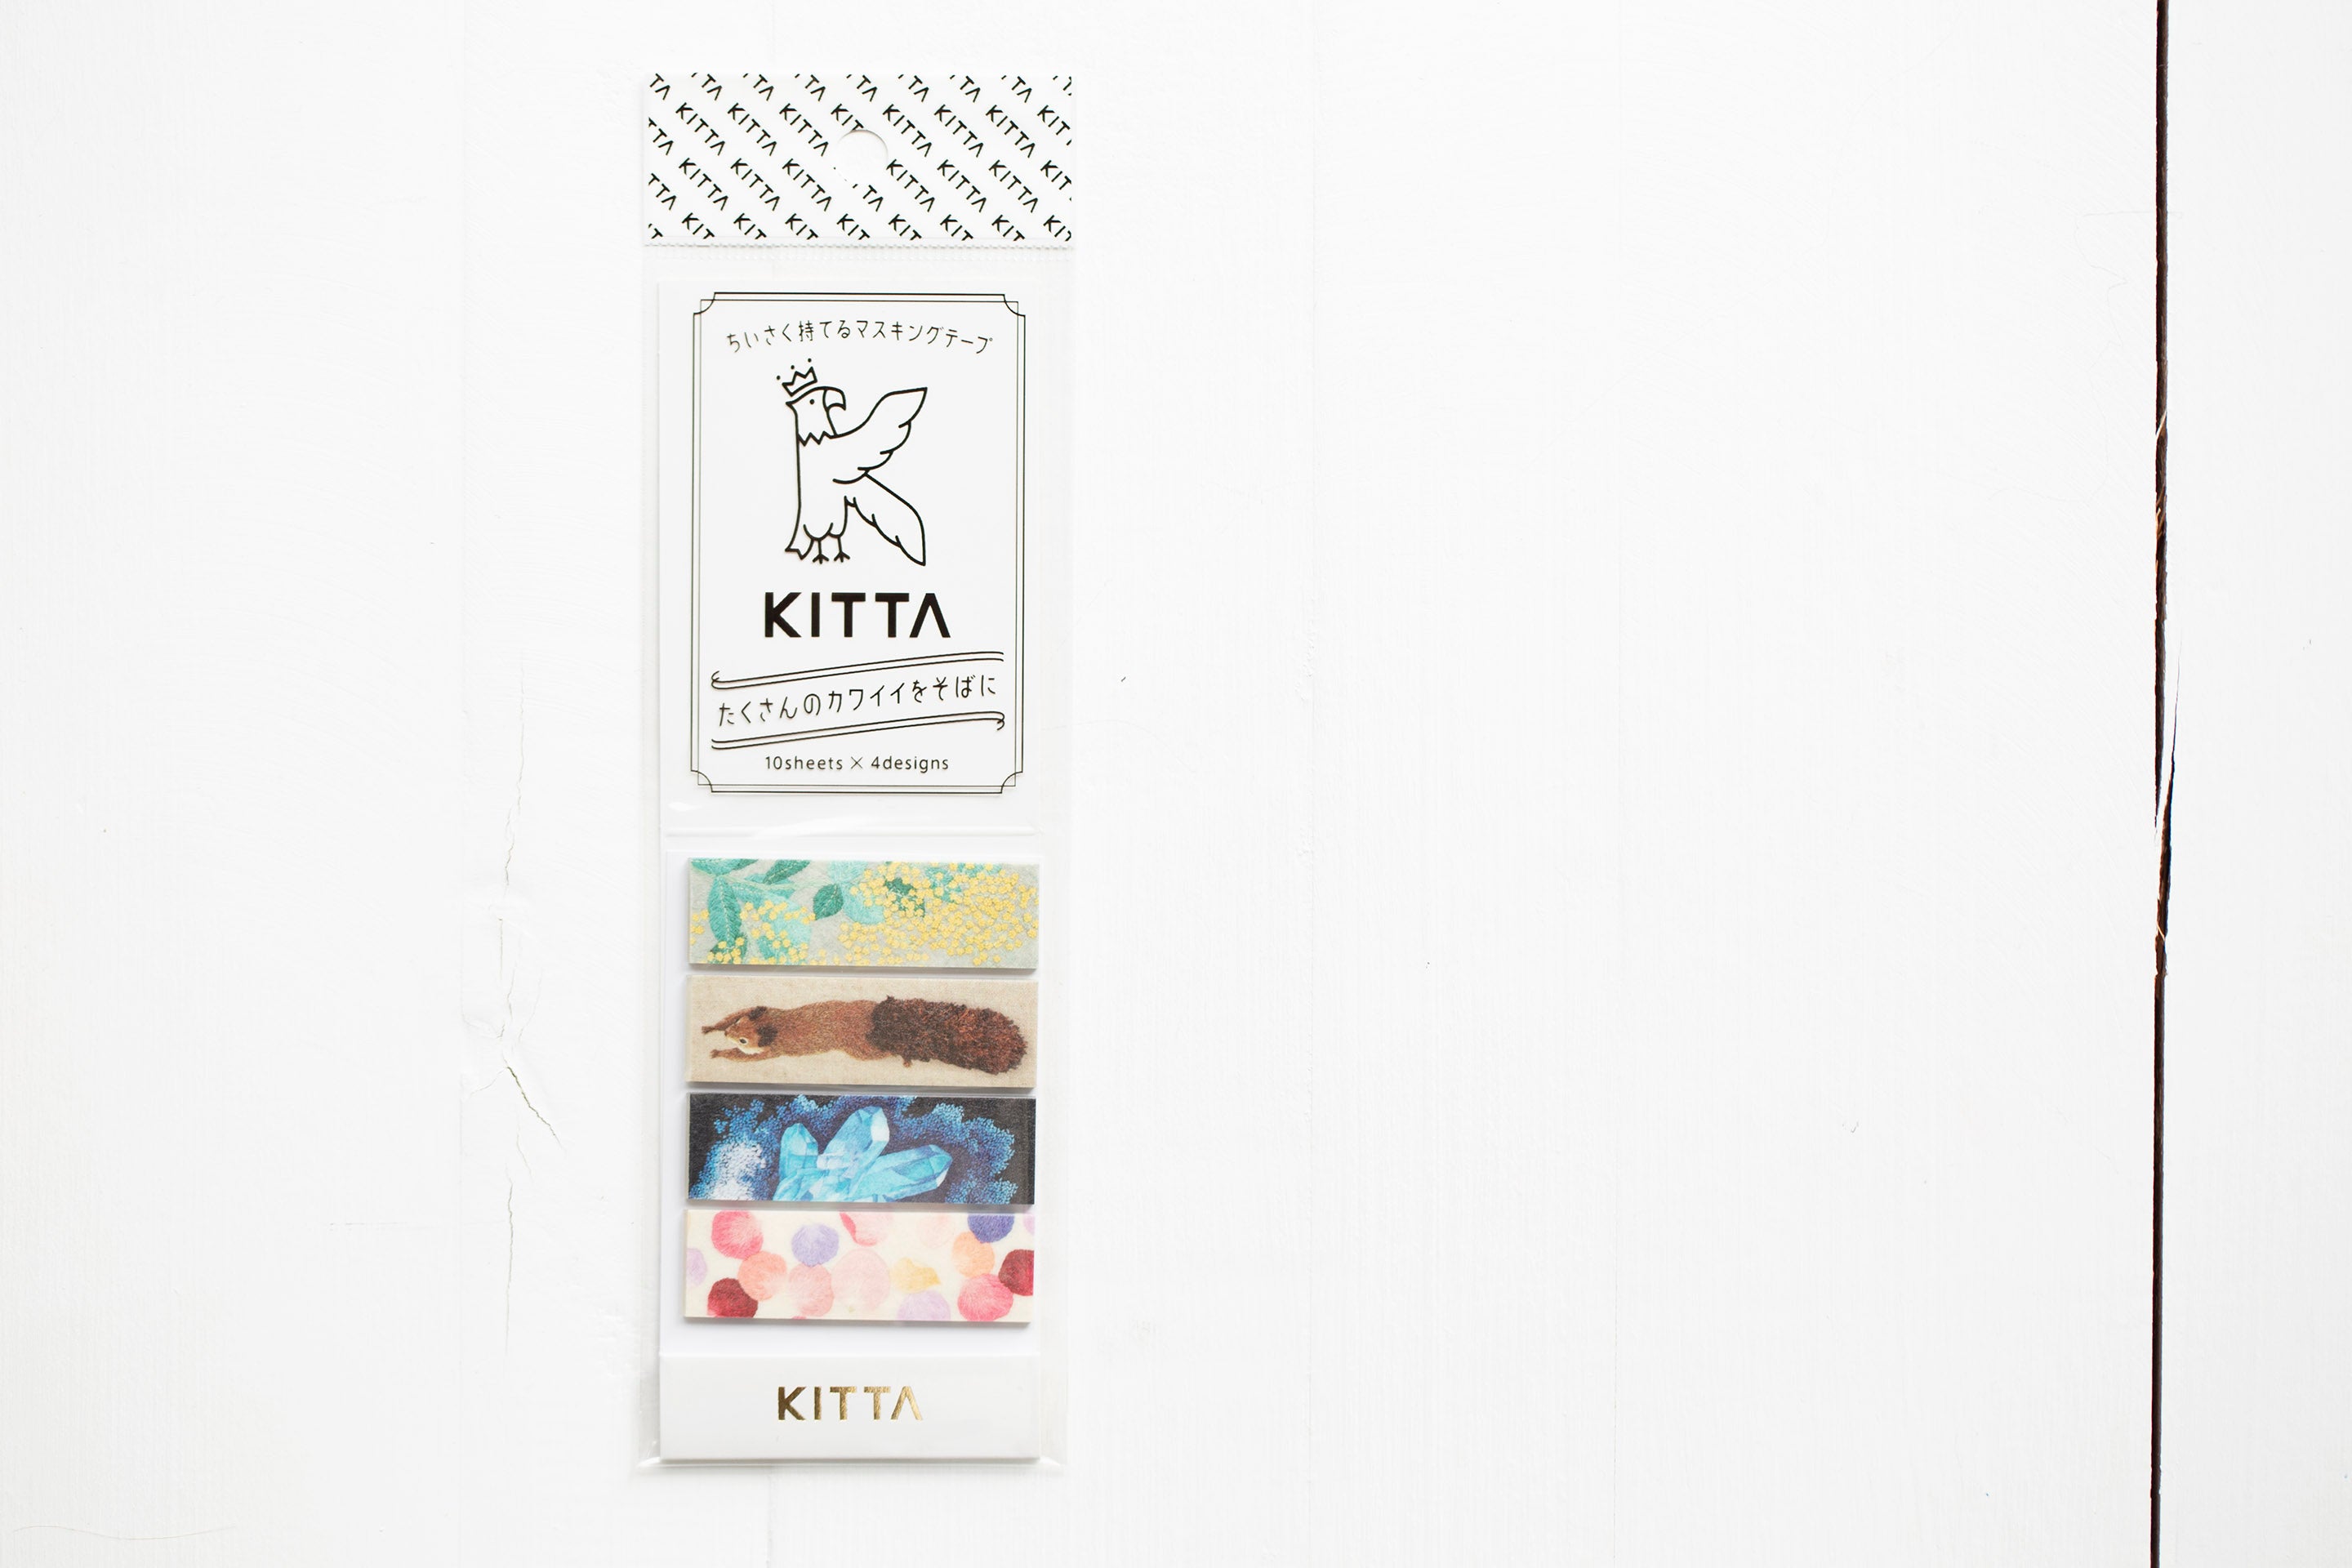 KITTA Washi Tape Sticky Note - Basic